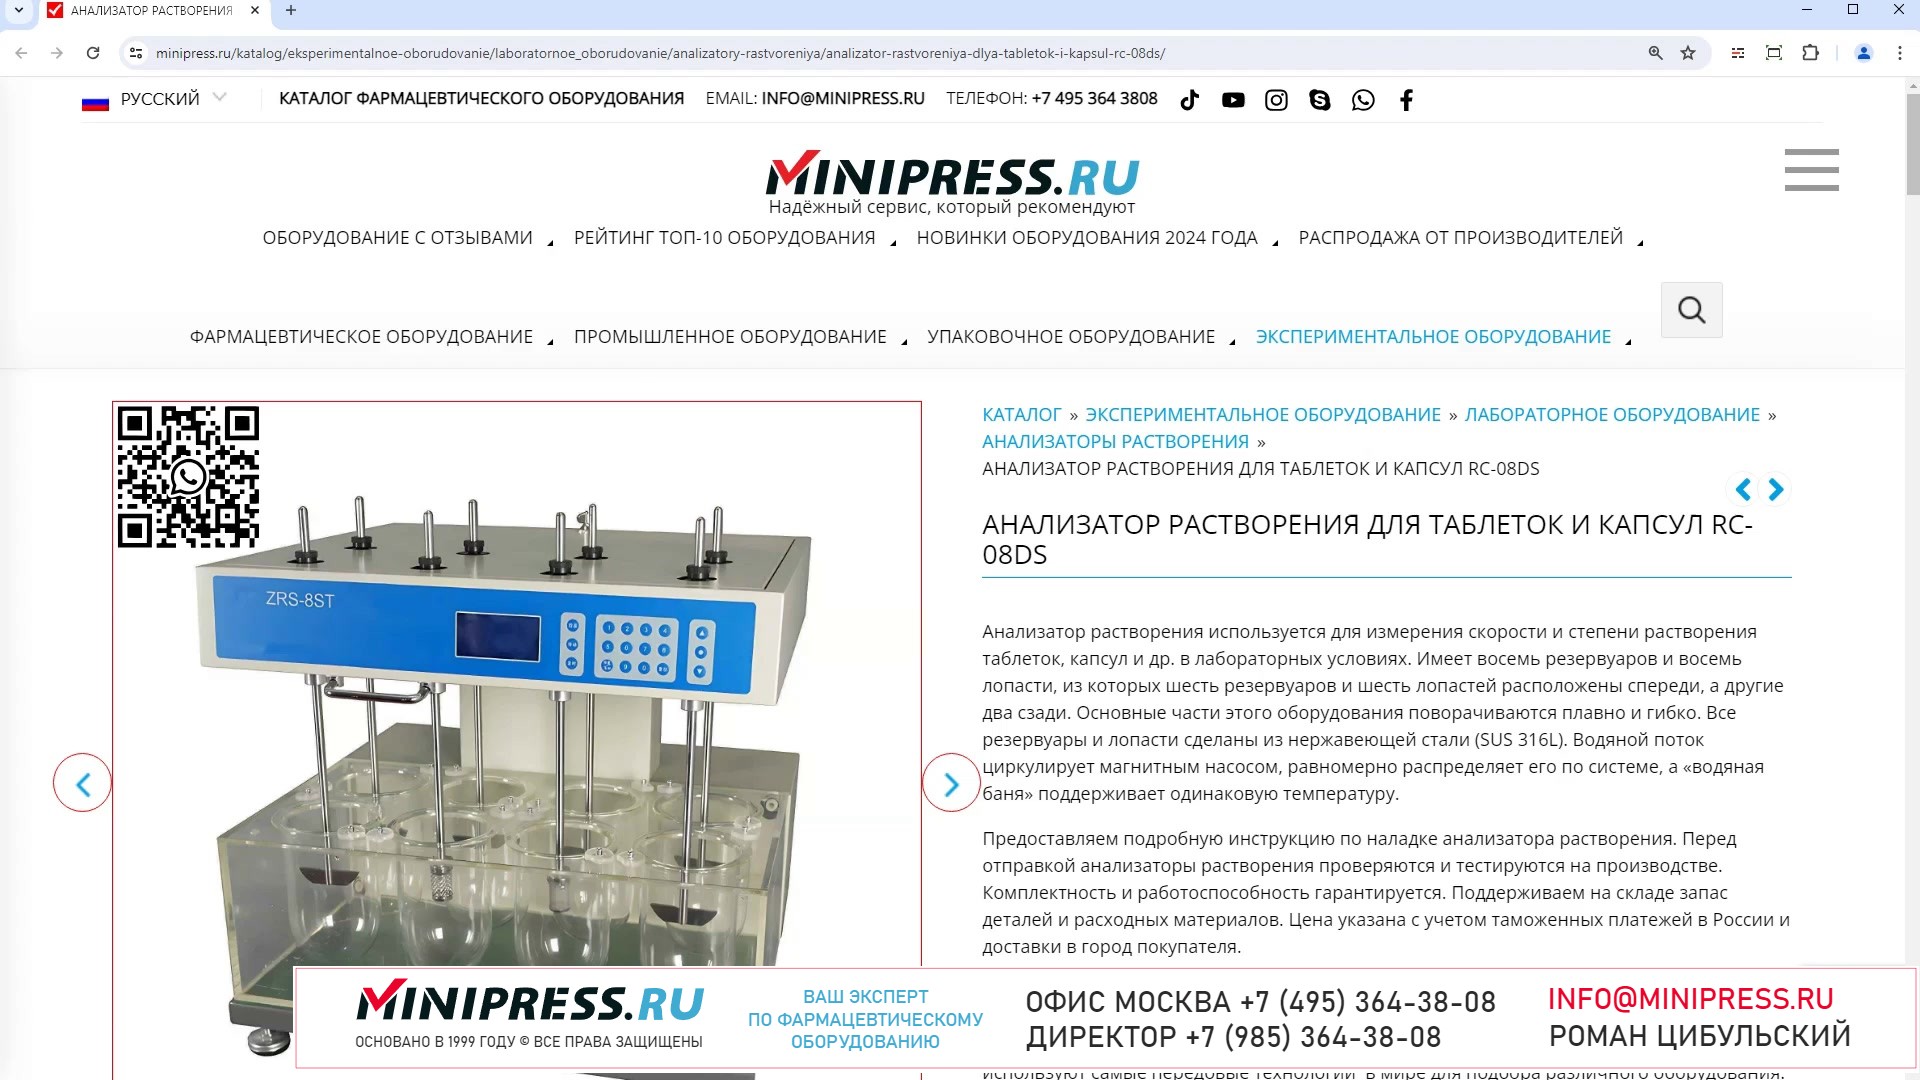 Minipress.ru Анализатор растворения для таблеток и капсул RC-08DS